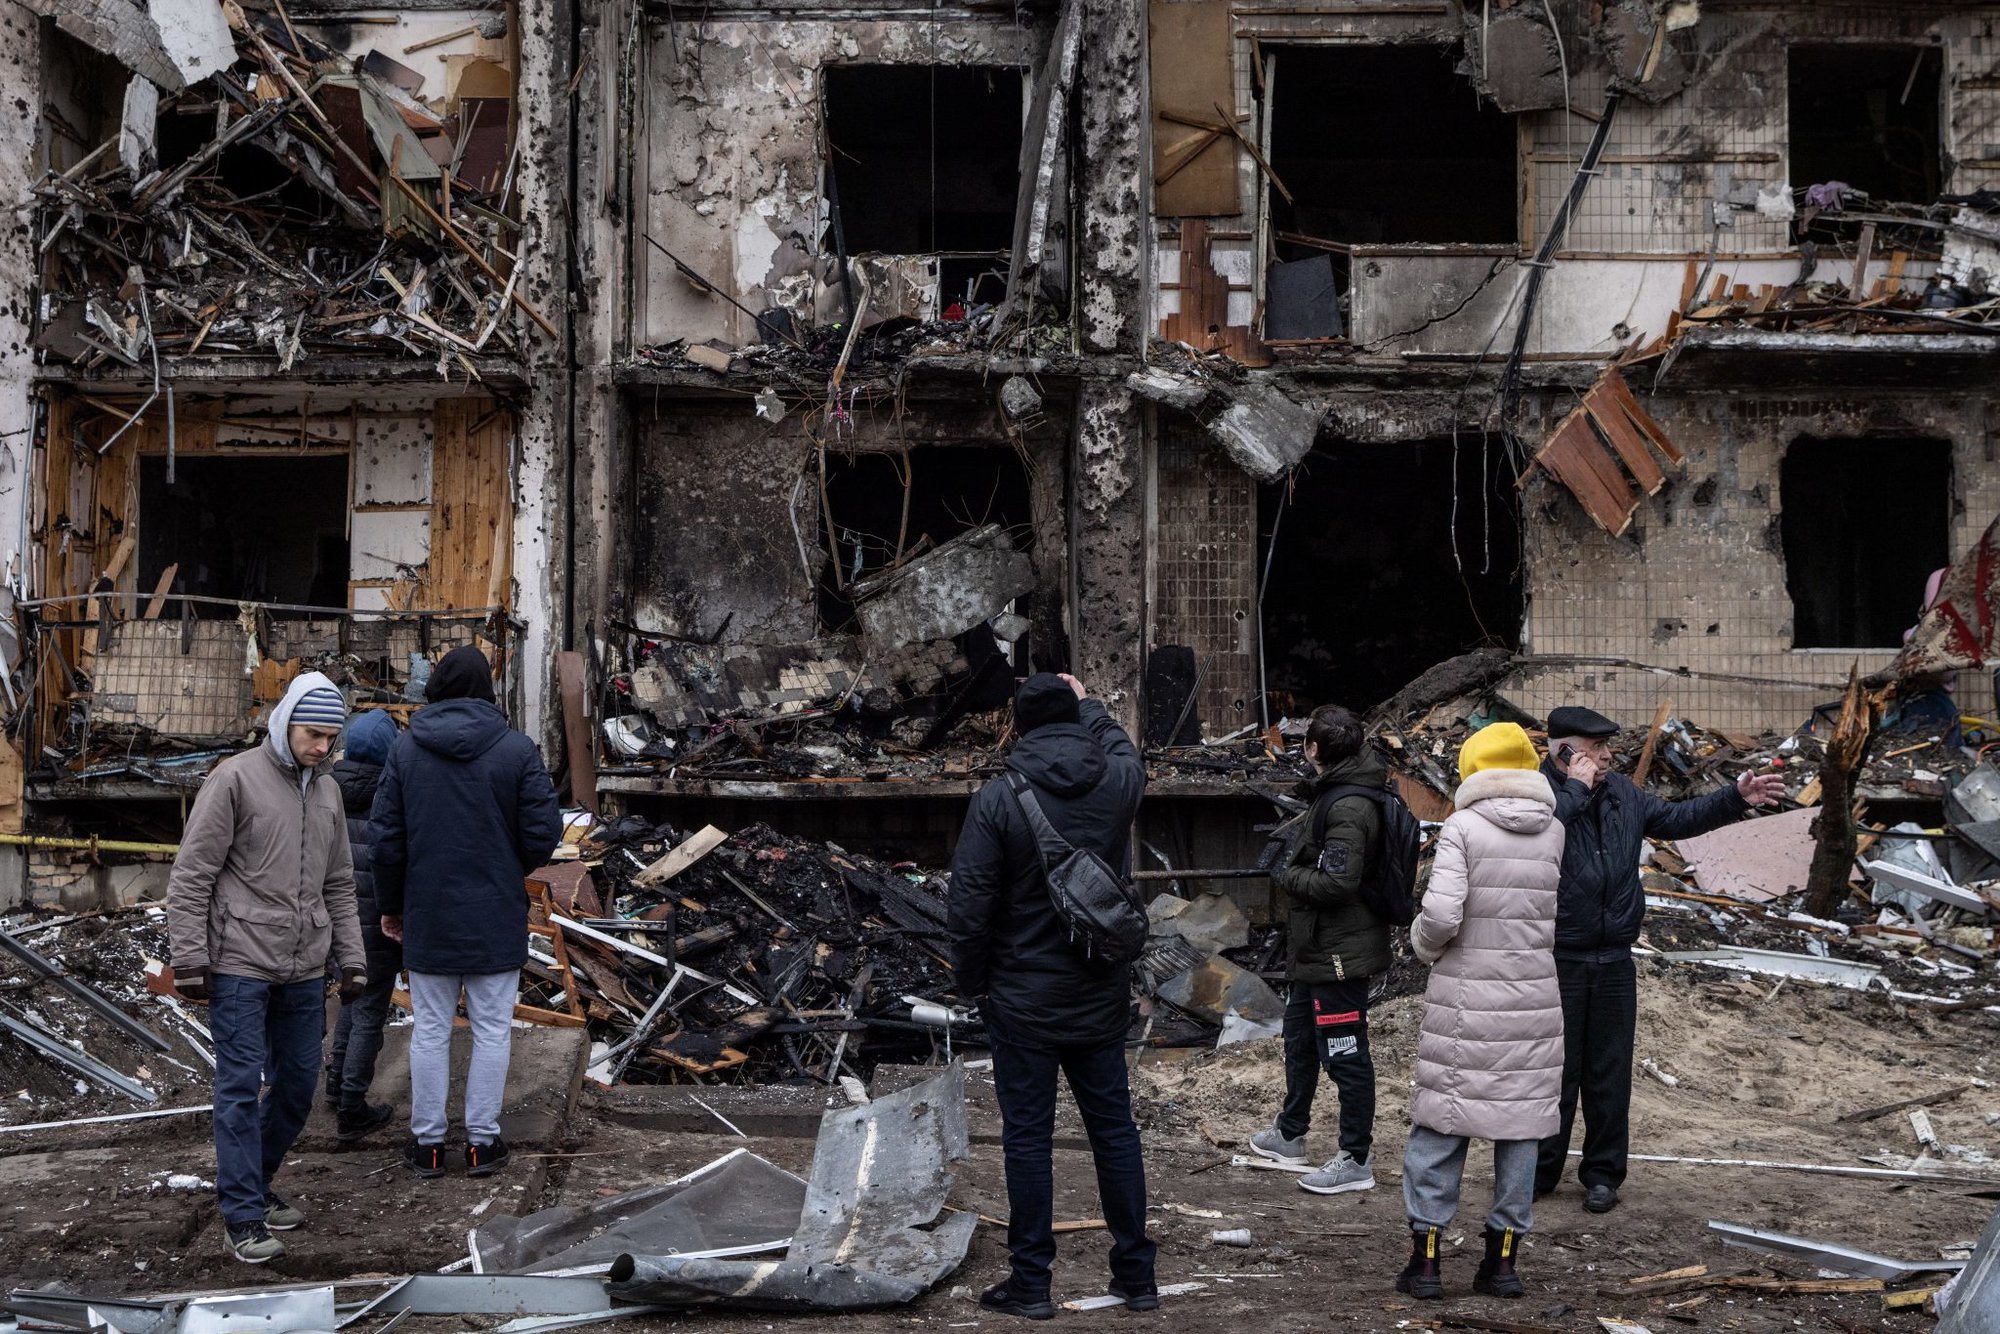 kyiv under siege